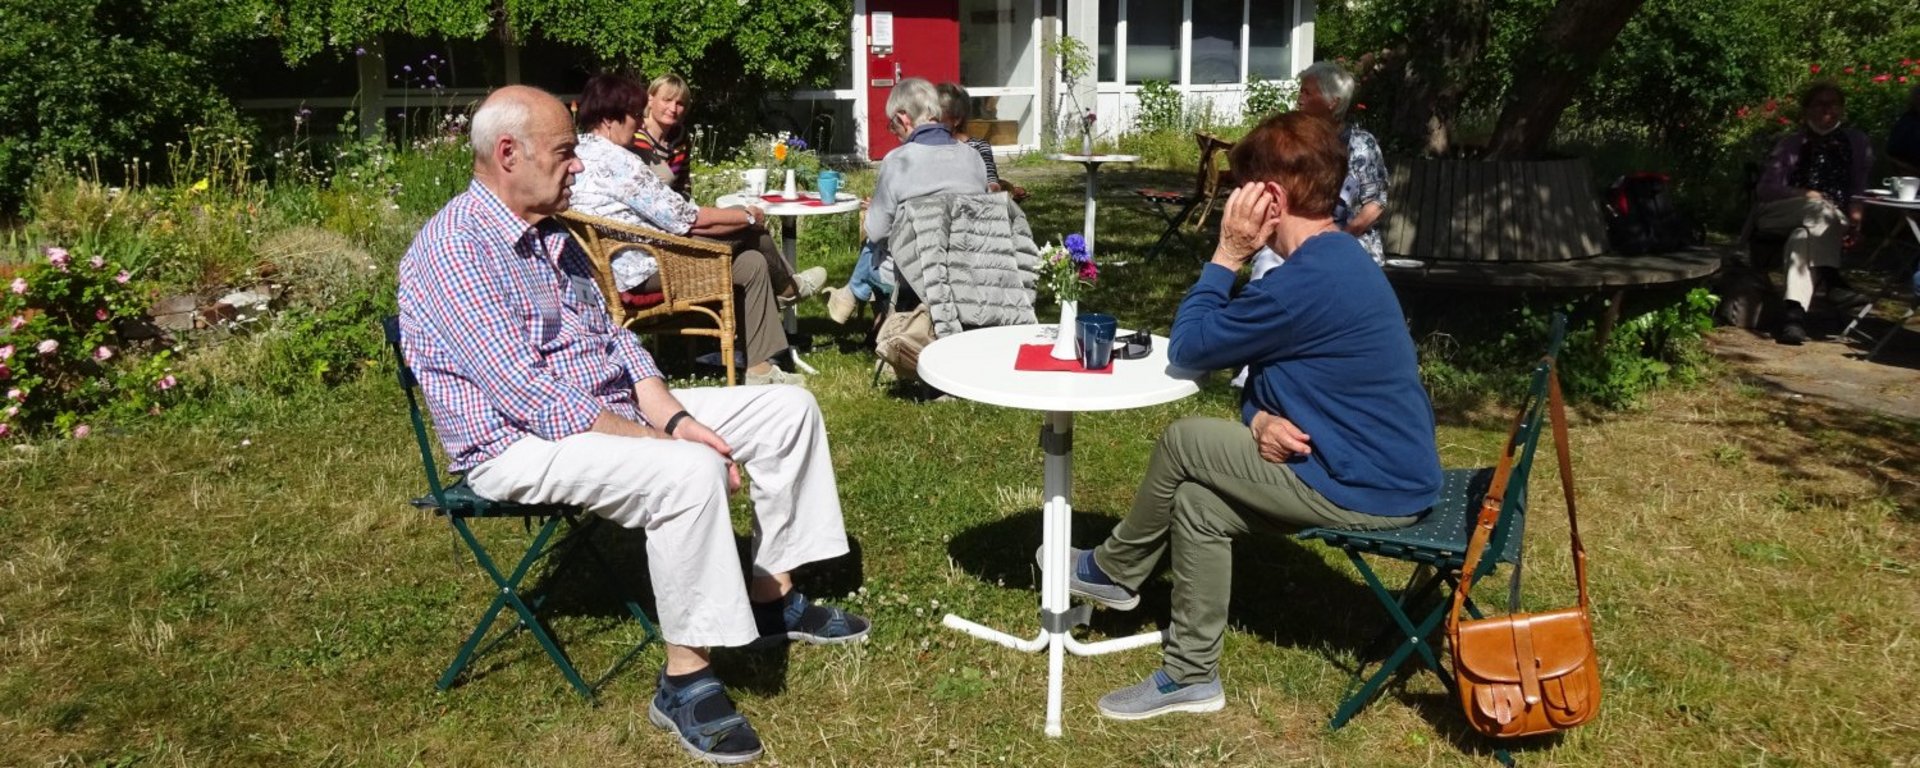 Weitere Gäste im Sommer-Café. Bild Agda von Walter